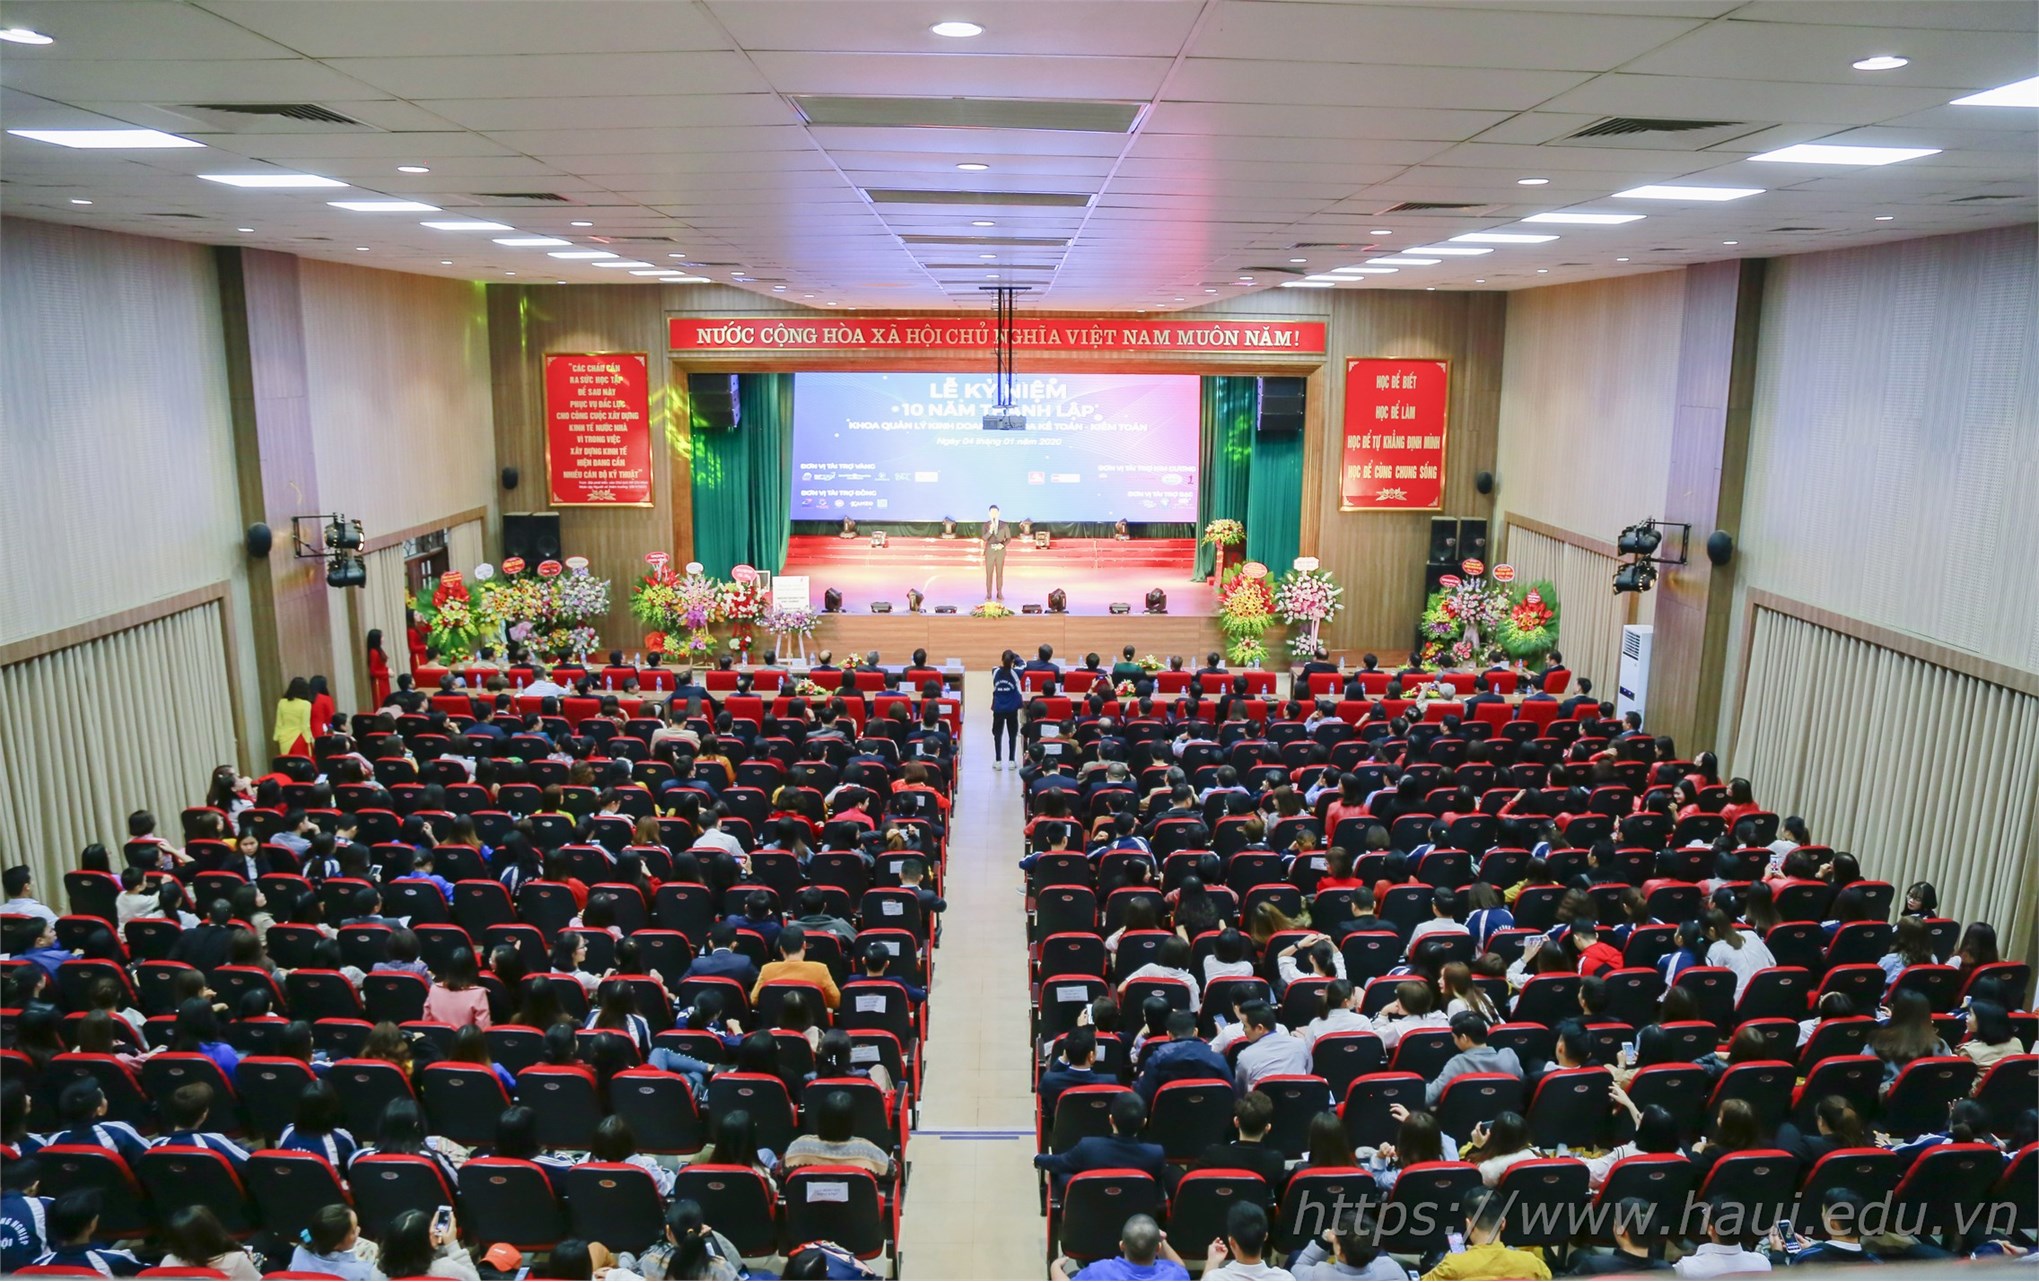 Kỷ niệm 10 năm thành lập khoa Quản lý Kinh doanh và khoa Kế toán - Kiểm toán, trường Đại học Công nghiệp Hà Nội